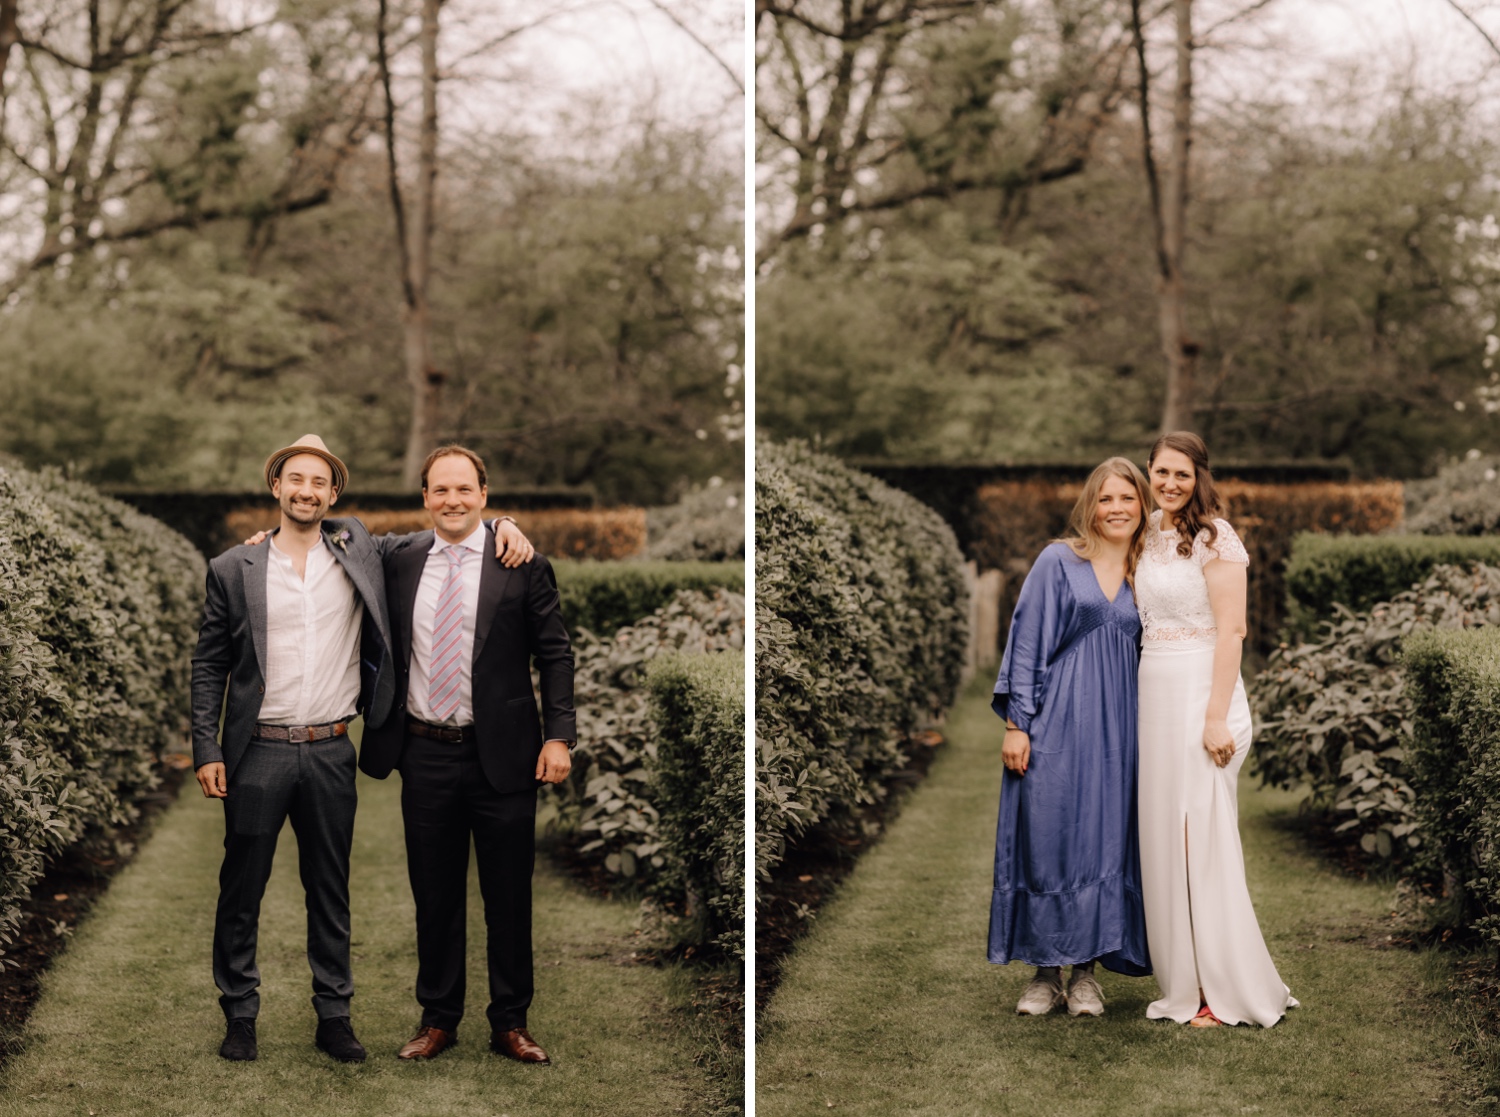 Huwelijksfotograaf Limburg - bruid en bruidegom poseren met hun getuigen in de tuin